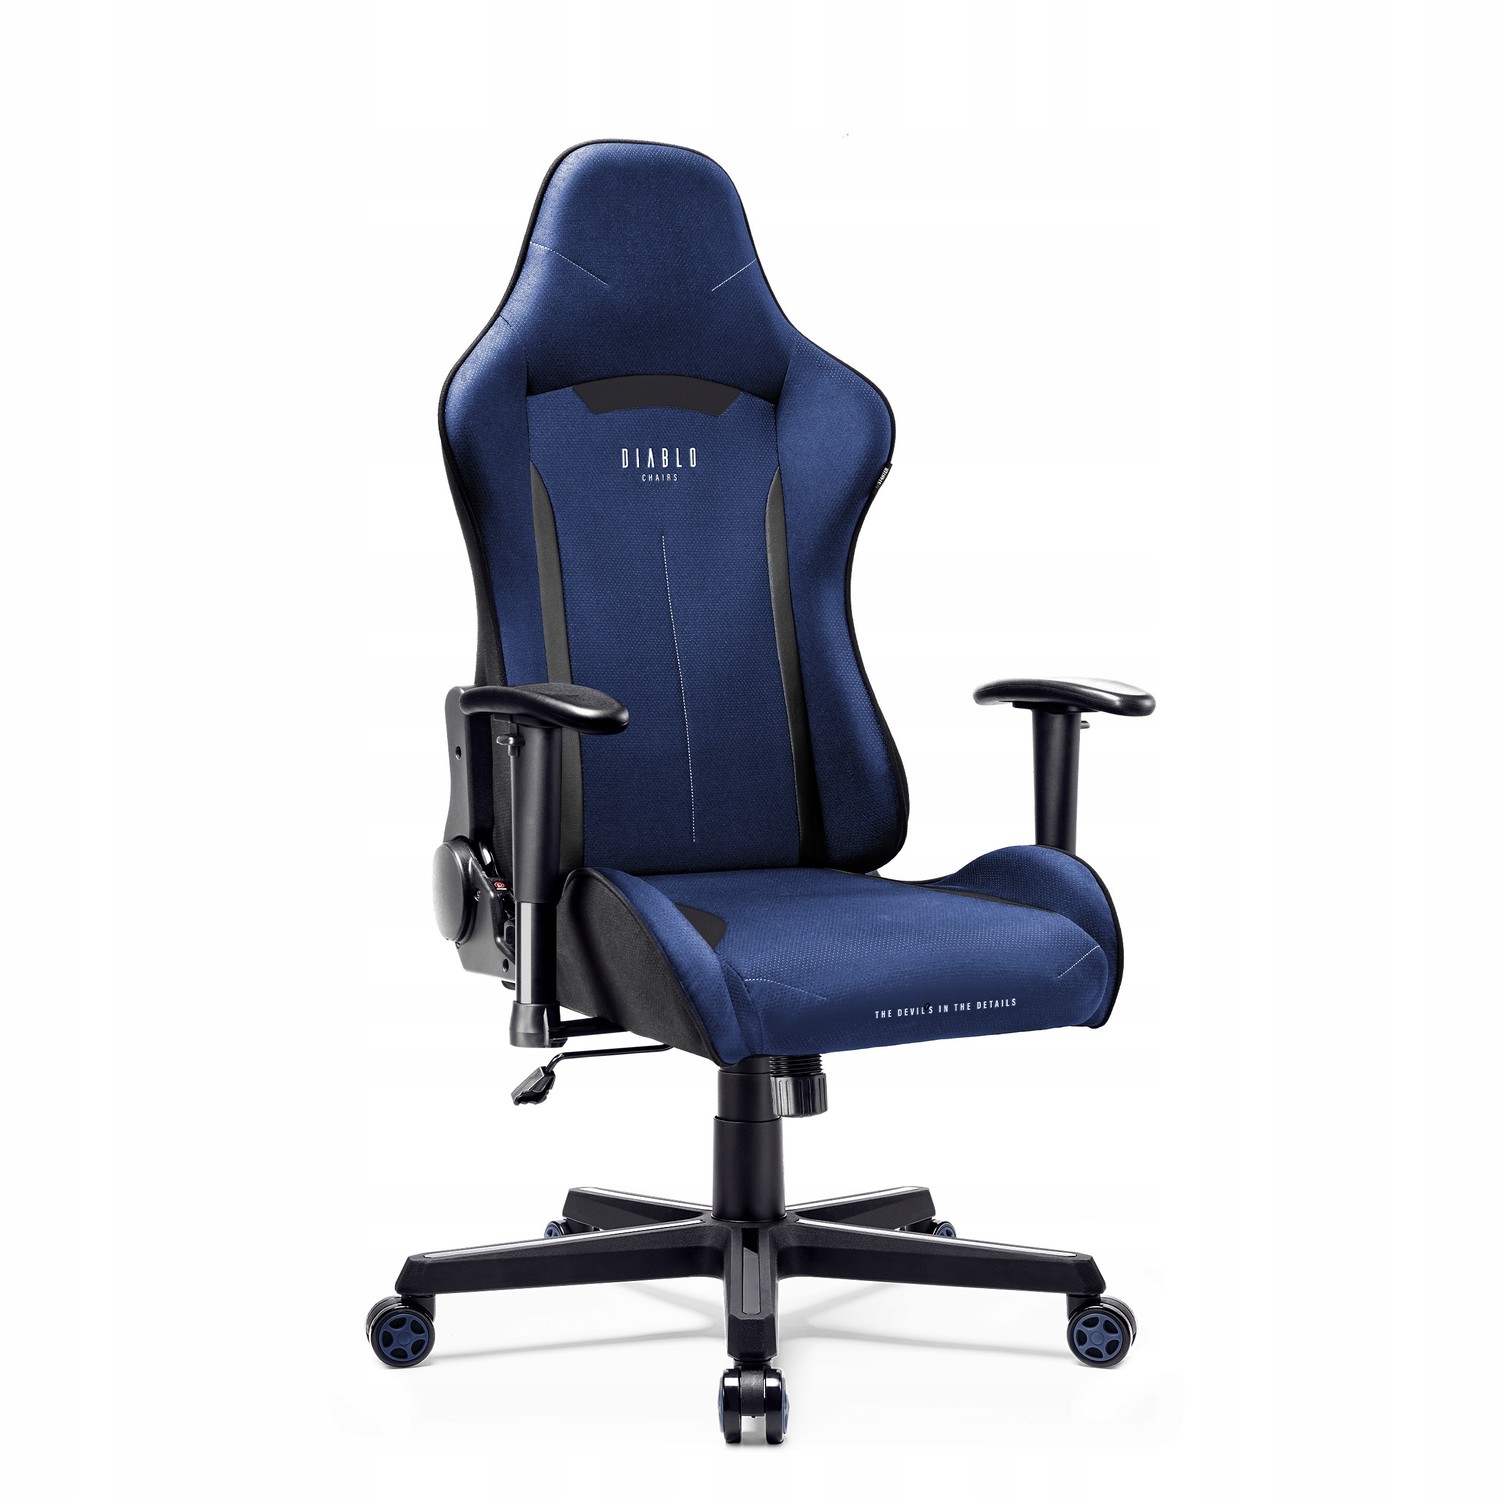 Herní židle Diablo X-starter textilní tmavě modrá